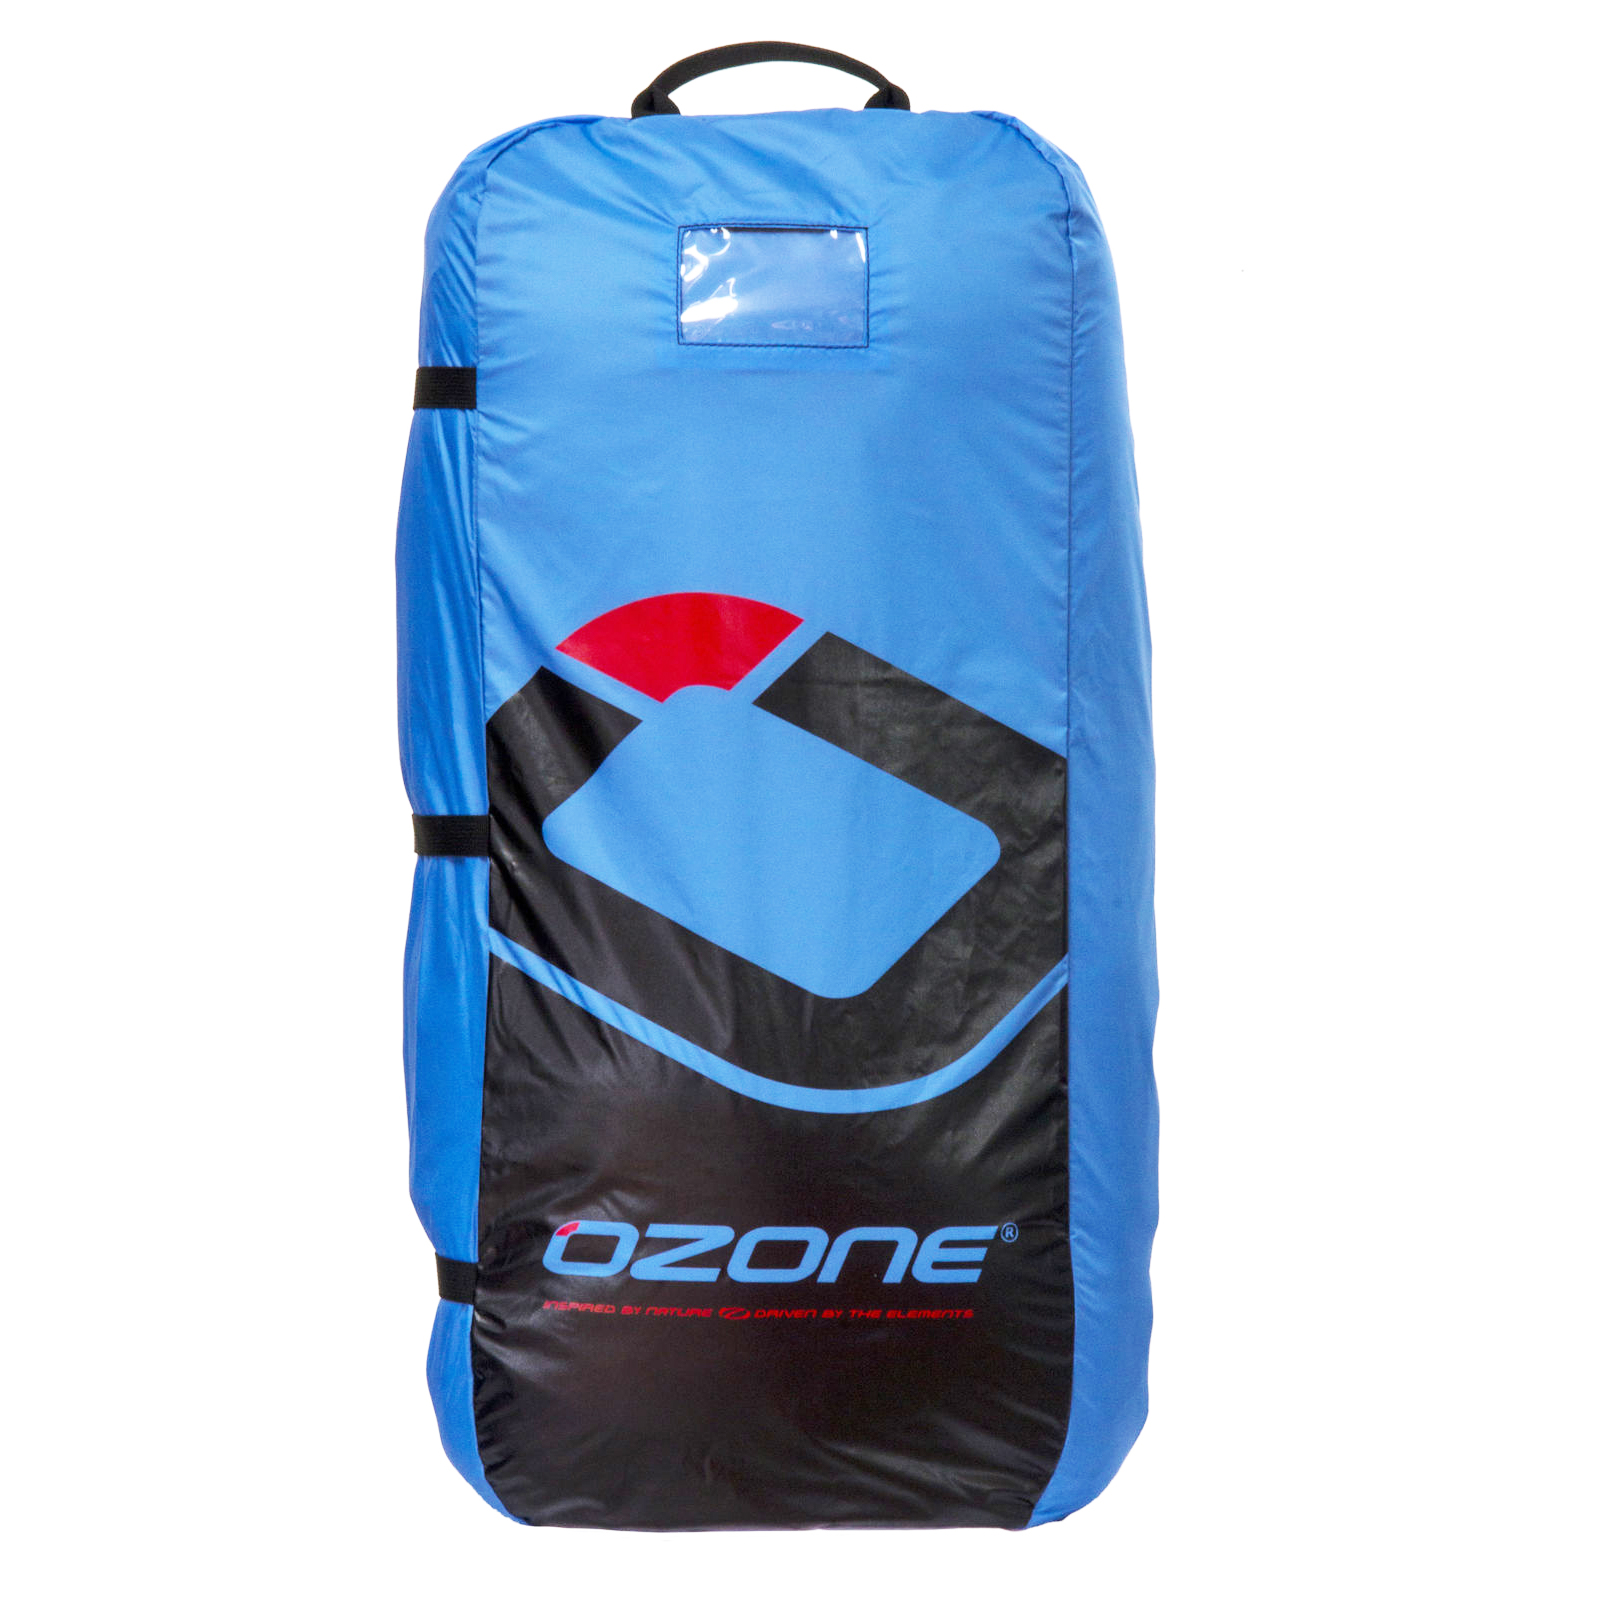 Ozone Water Kite Compressor Bag - Ozone Kites UK